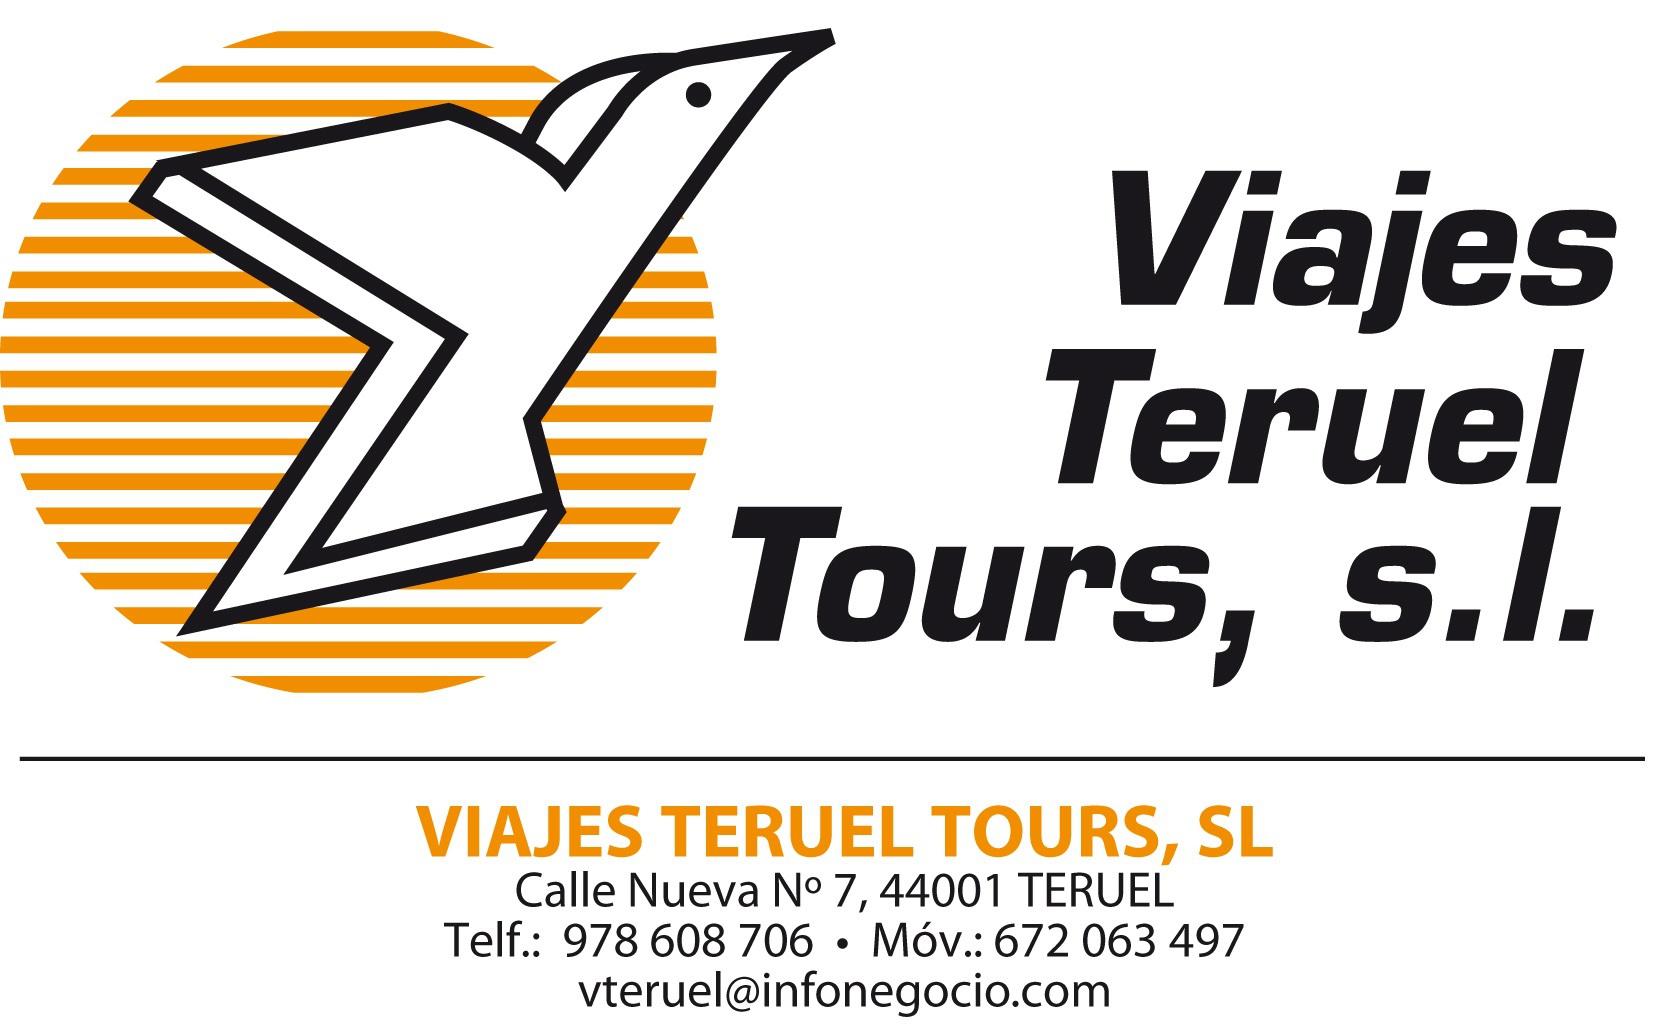 Images Viajes Teruel Tours